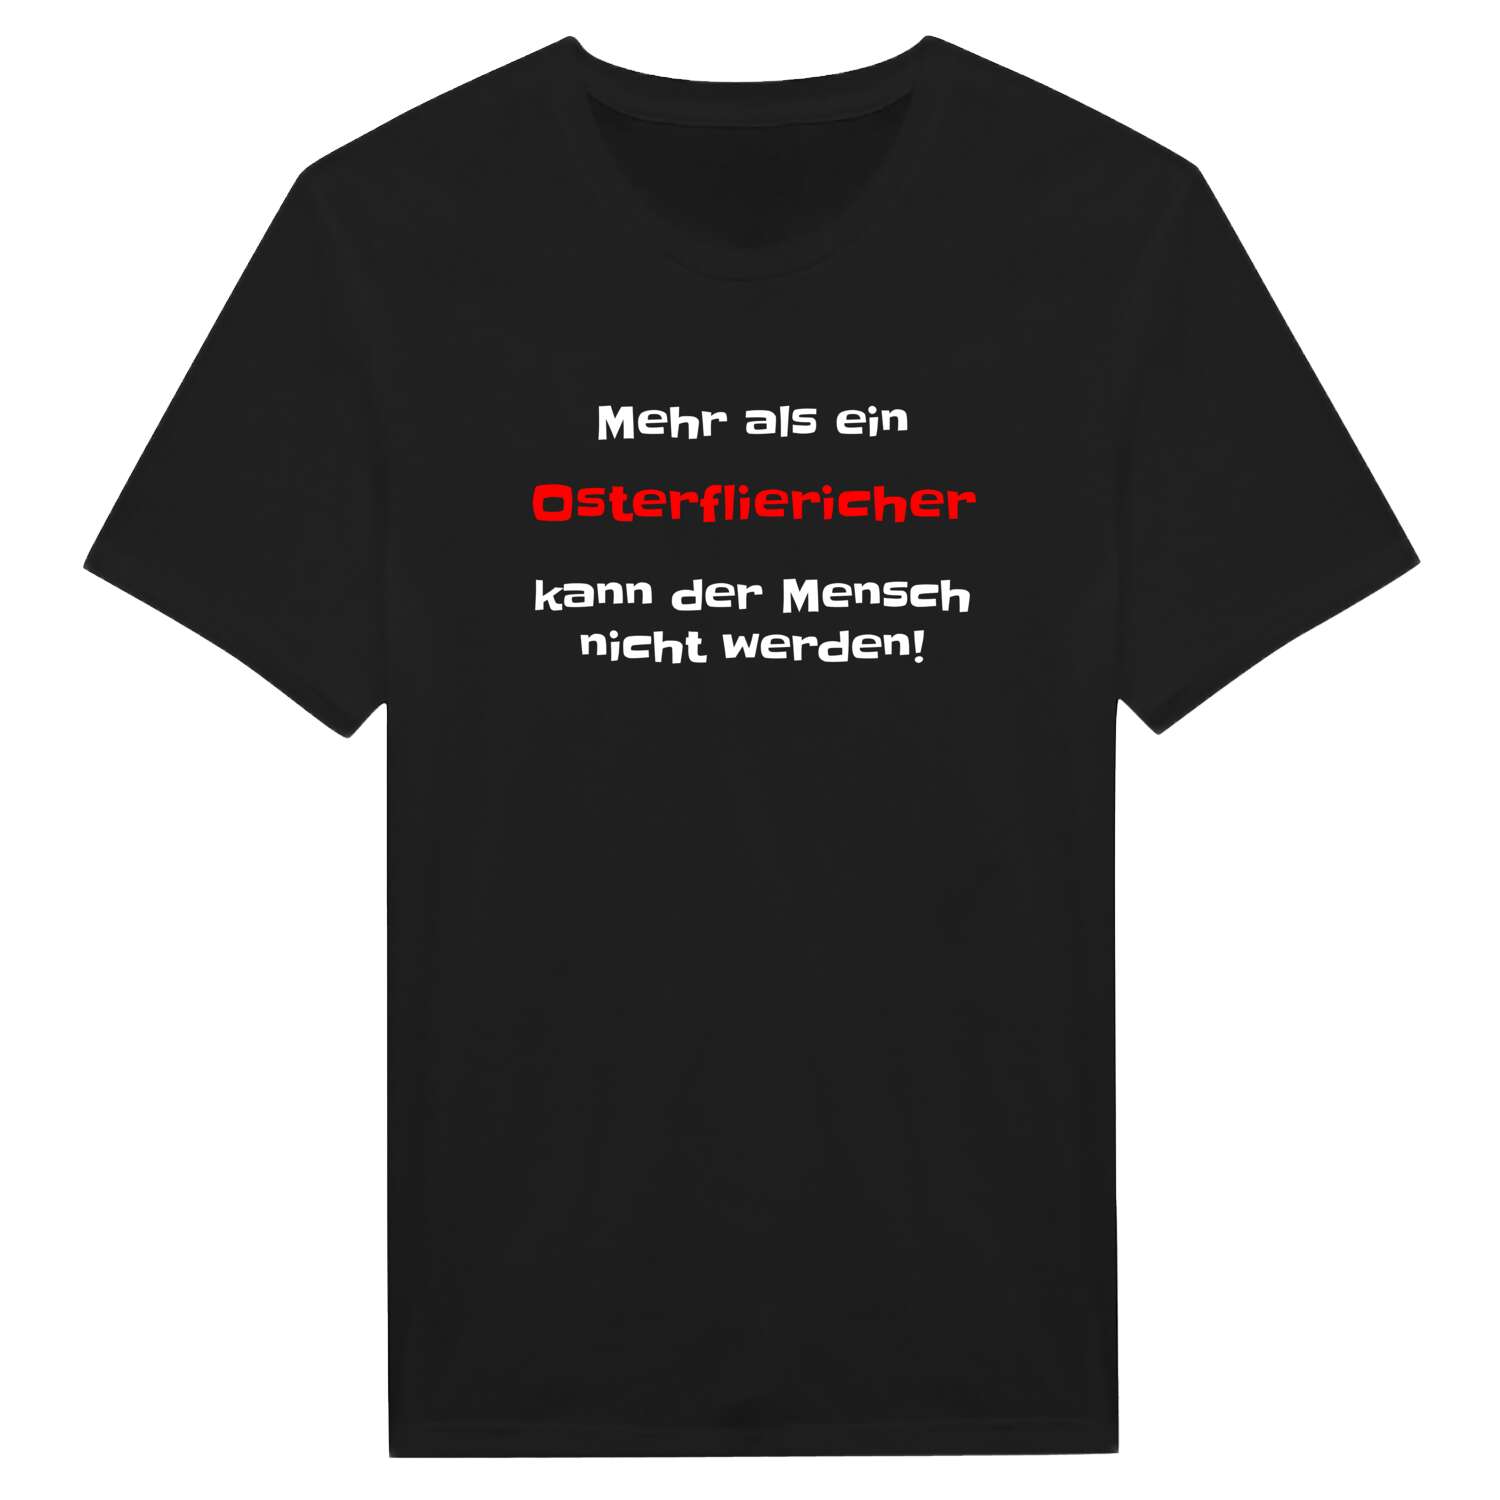 Osterflierich T-Shirt »Mehr als ein«